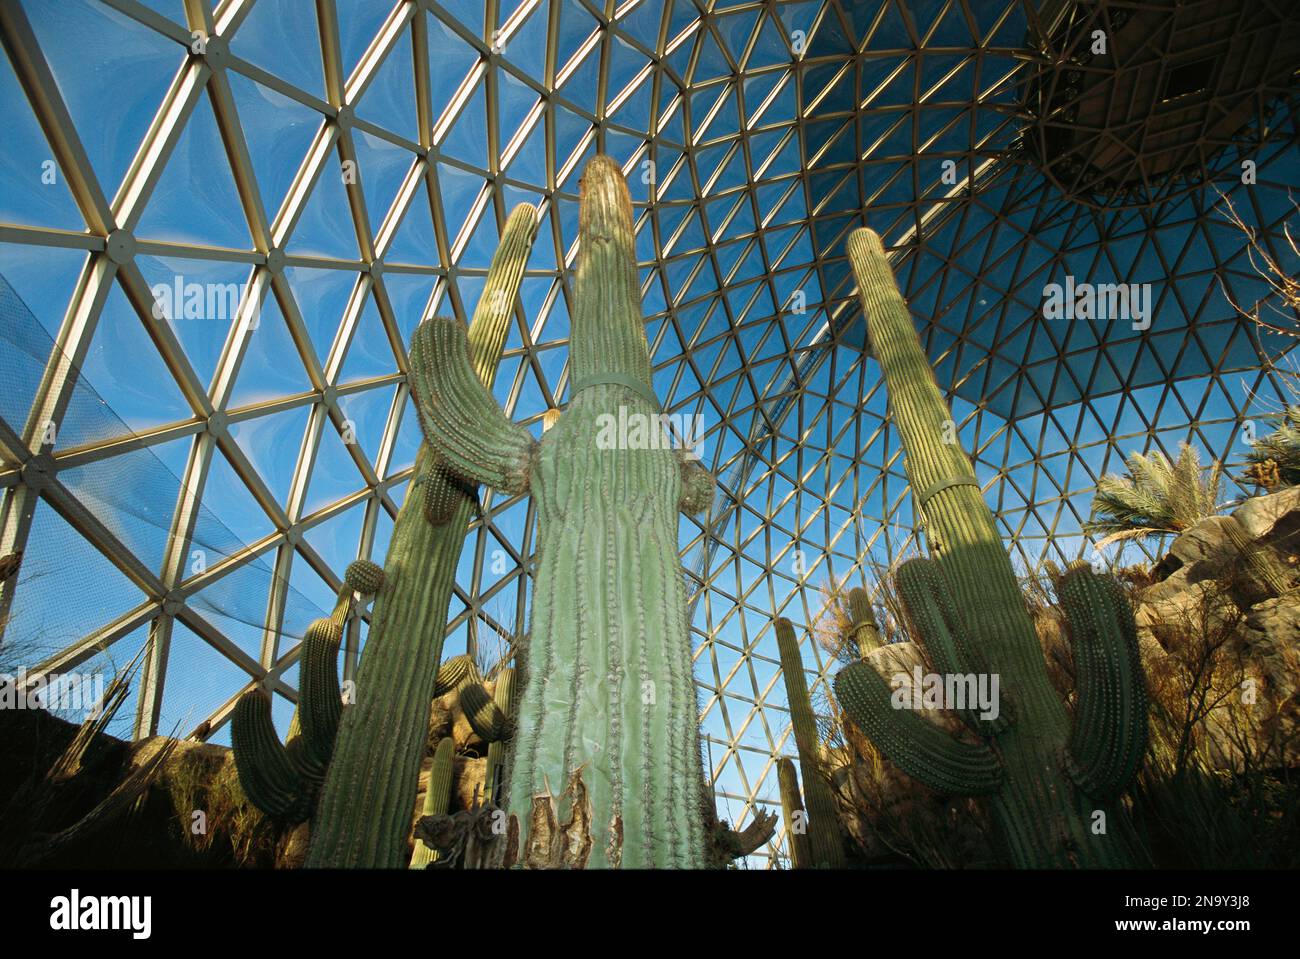 Cactus dans un enclos en dôme appelé le Desert Dome au zoo Henry Doorly à Omaha, Nebraska, États-Unis ; Omaha, Nebraska, États-Unis d'Amérique Banque D'Images